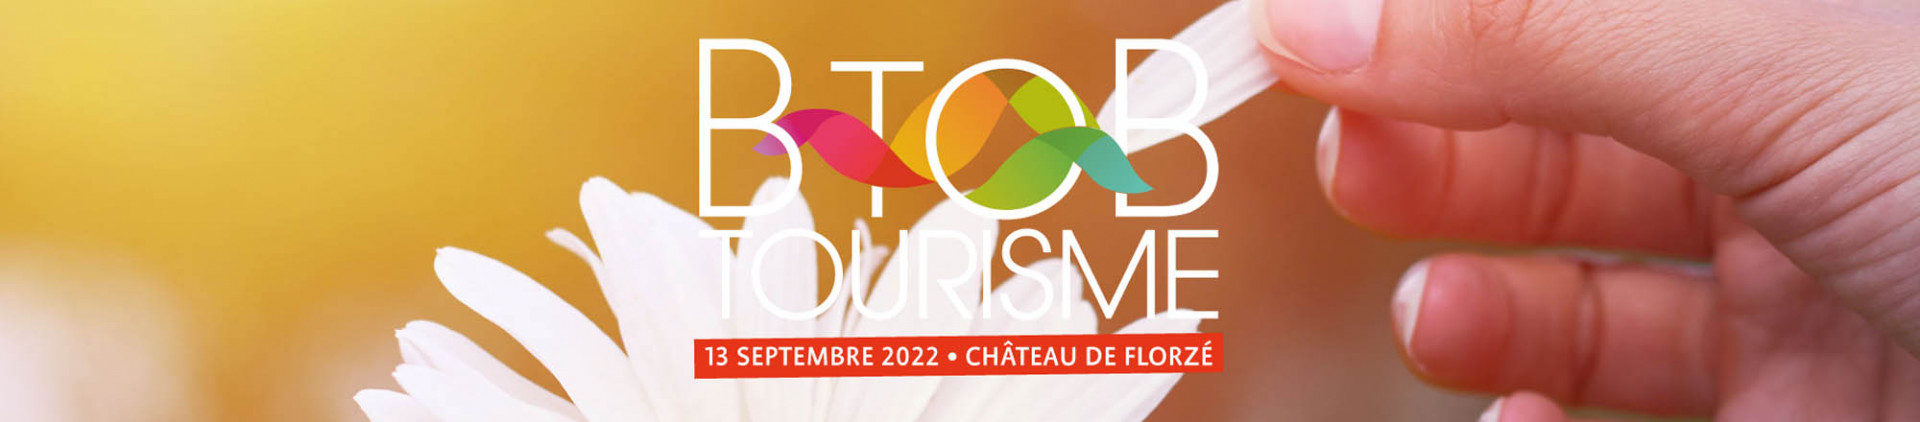 BTOB Tourisme 2022 - 13 septembre 2022 - Château de Florzé